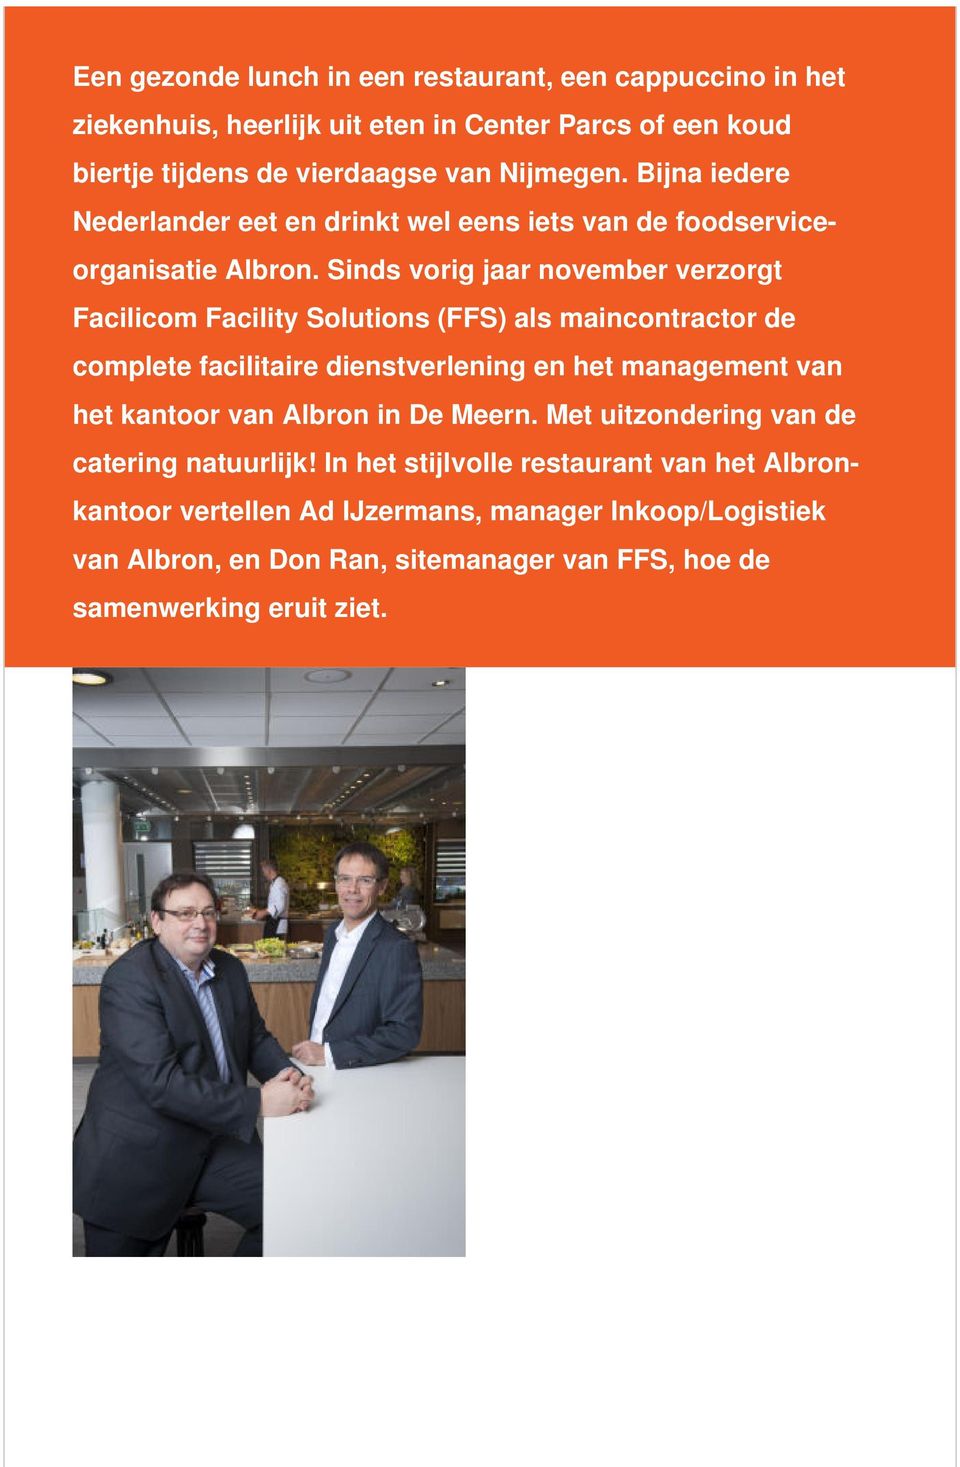 Sinds vorig jaar november verzorgt Facilicom Facility Solutions (FFS) als maincontractor de complete facilitaire dienstverlening en het management van het kantoor